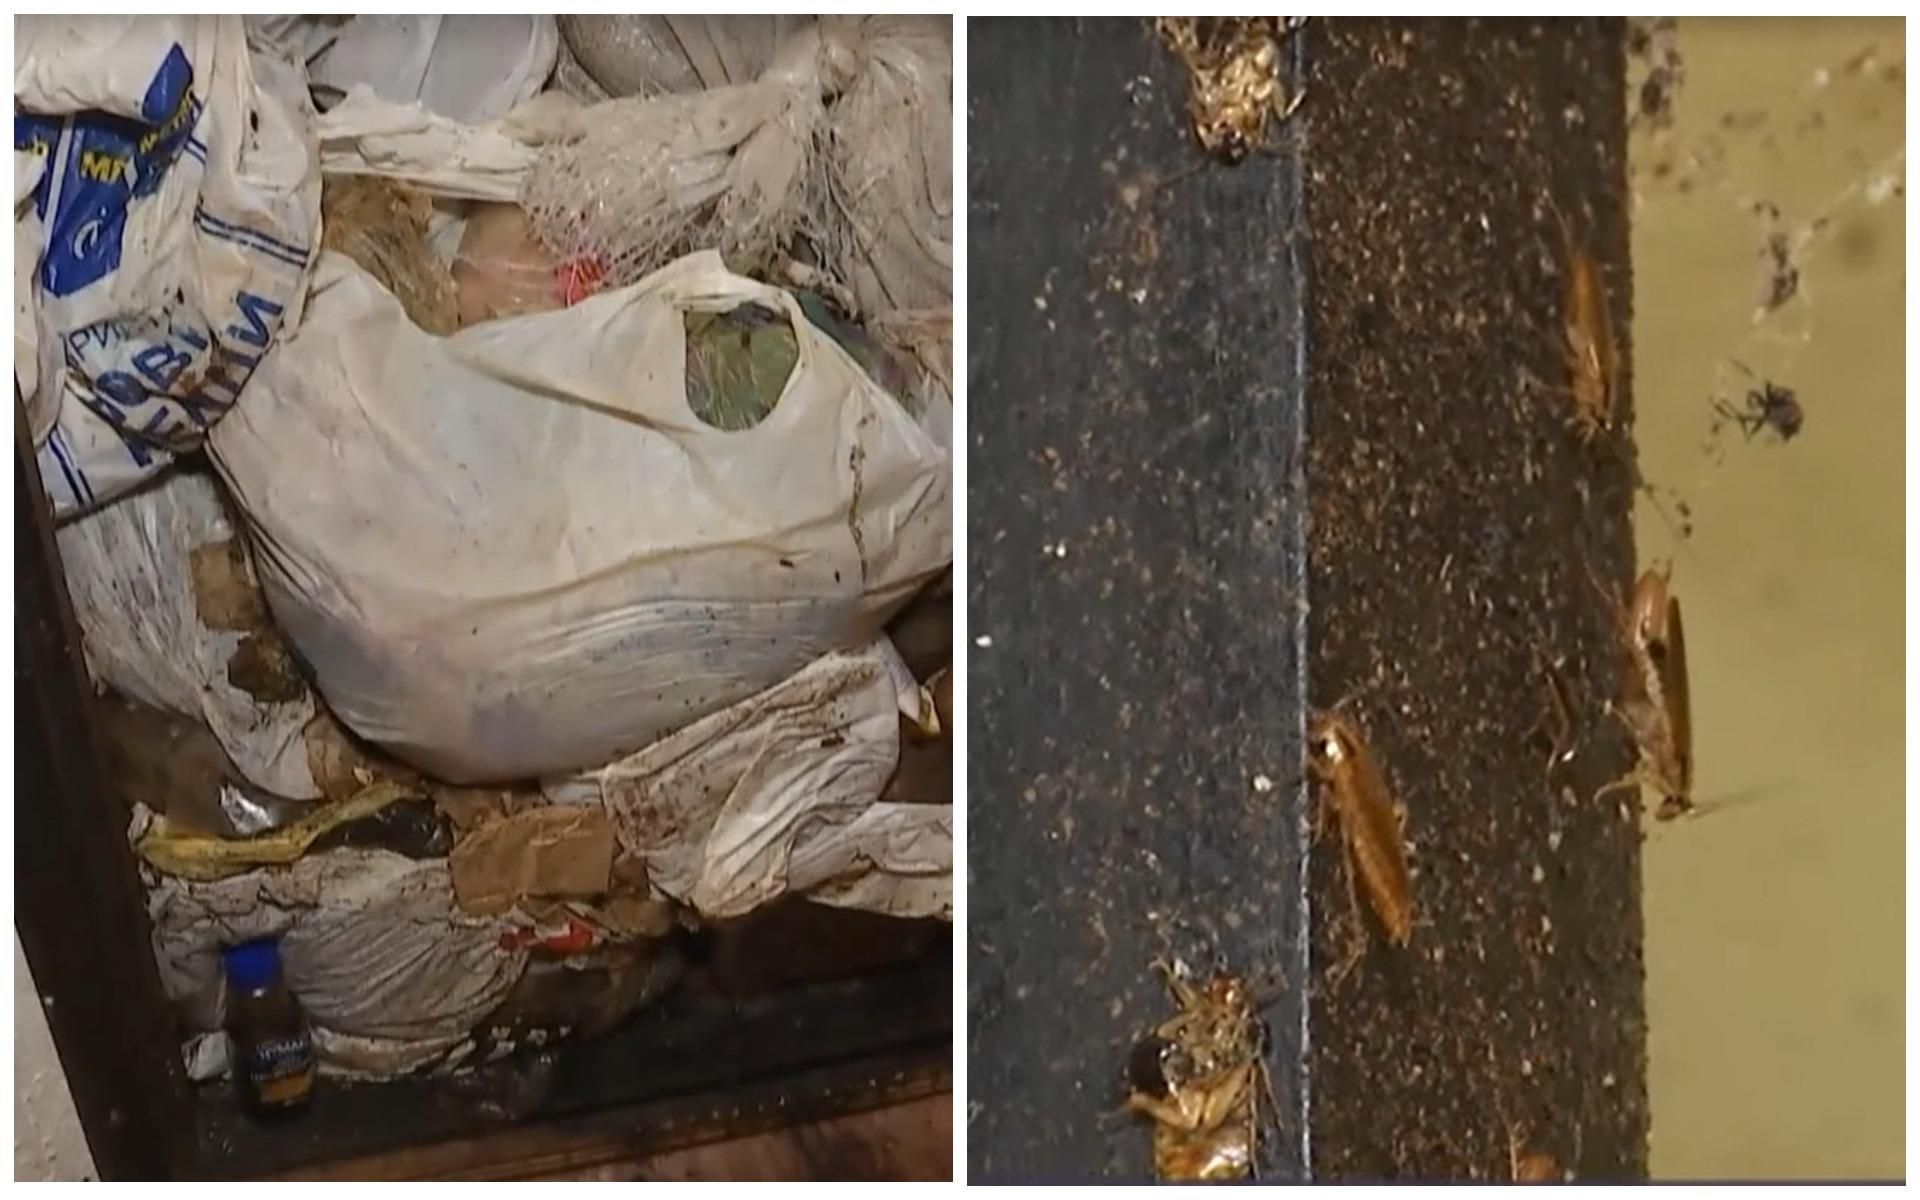 "Сусідський терор": у Києві жінка збирає сміття з тарганами у квартирі і викидає їх через вікно - Кримінальні новини України - Київ